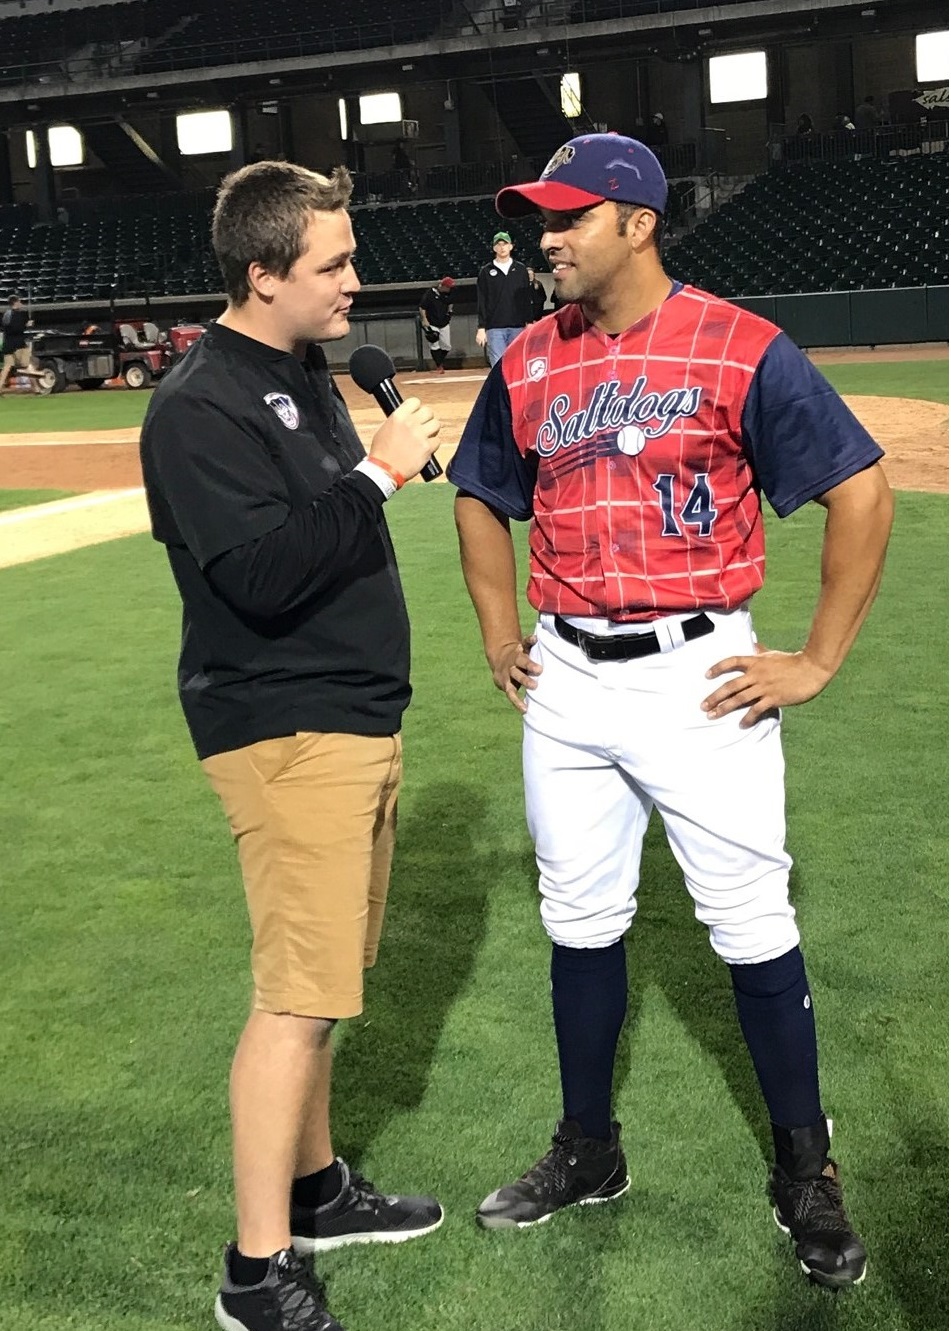   Ryan Schreurs (left) interviews Randolph Oduber, a Salt Dogs baseball player, during Schreurs’ internship in summer 2018.